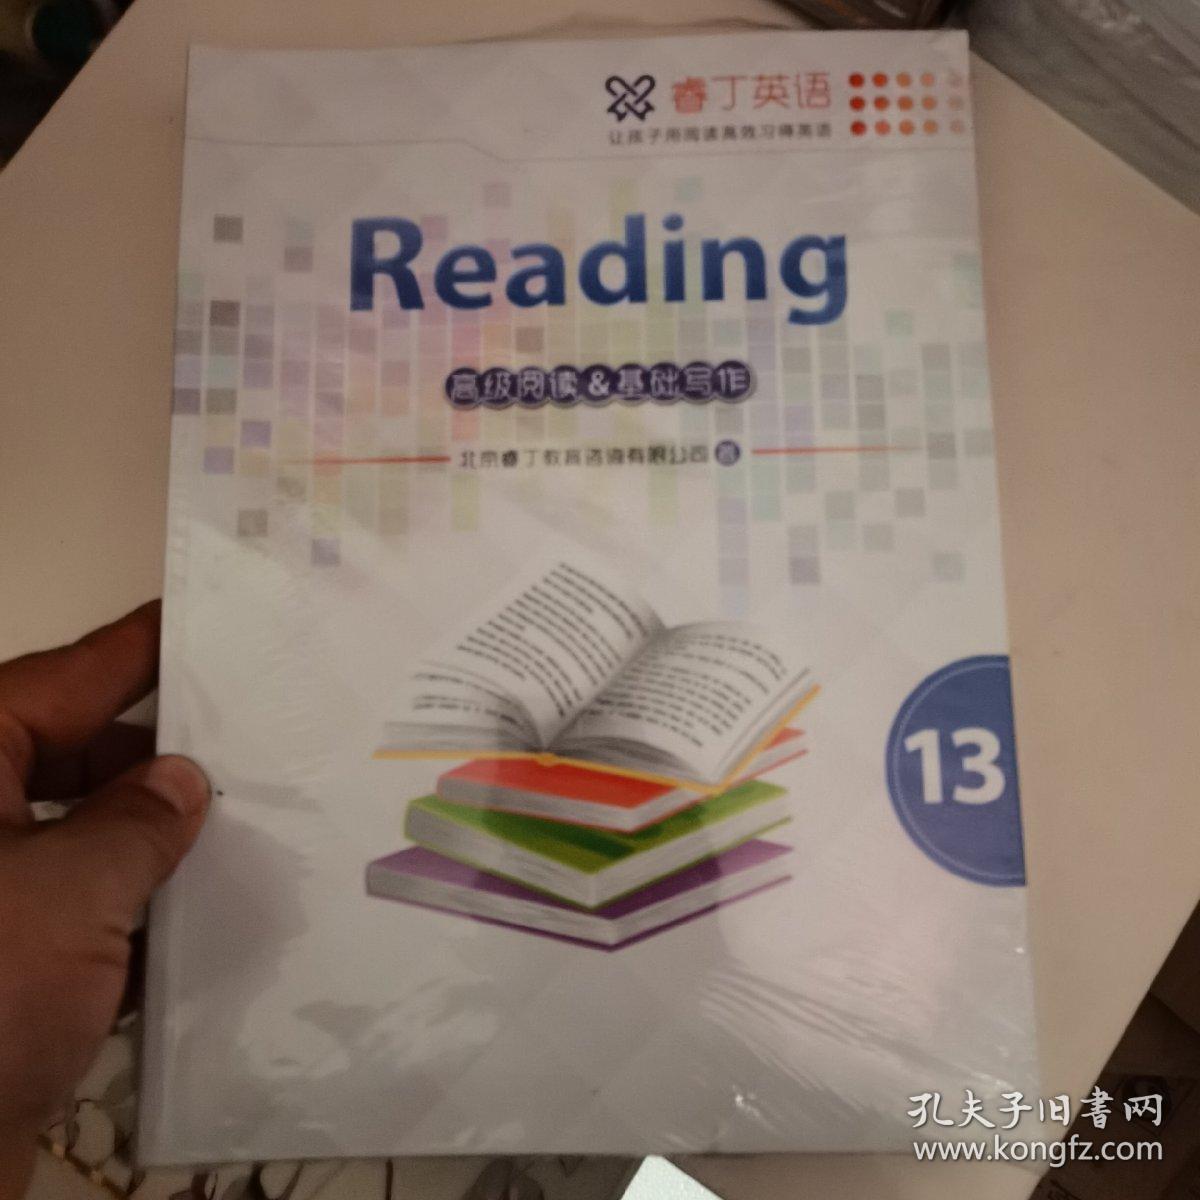 睿丁英语Reading高级阅读（13、14、15、16四册合售）。